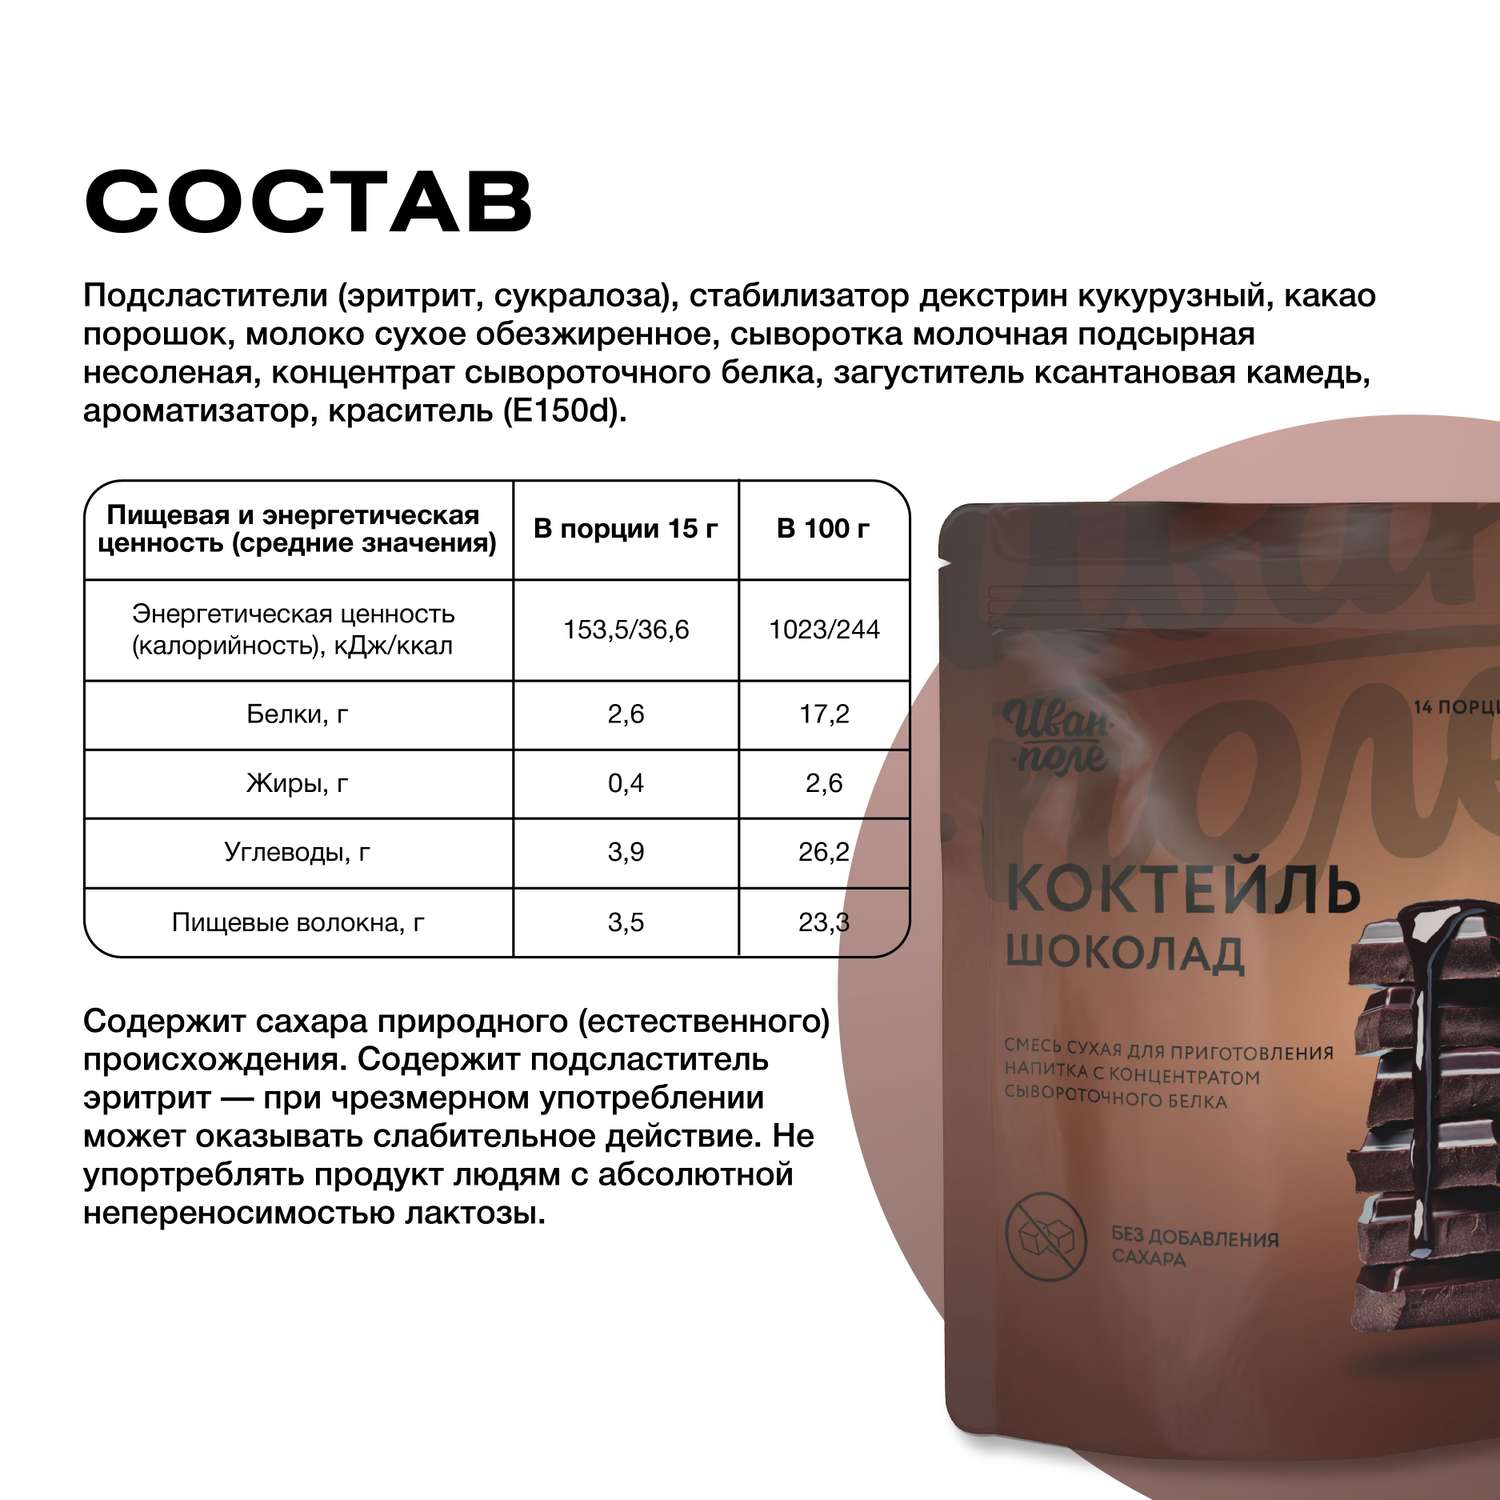 Протеиновый молочный коктейль Иван-поле Шоколад без сахара для похудения 210 г - фото 2